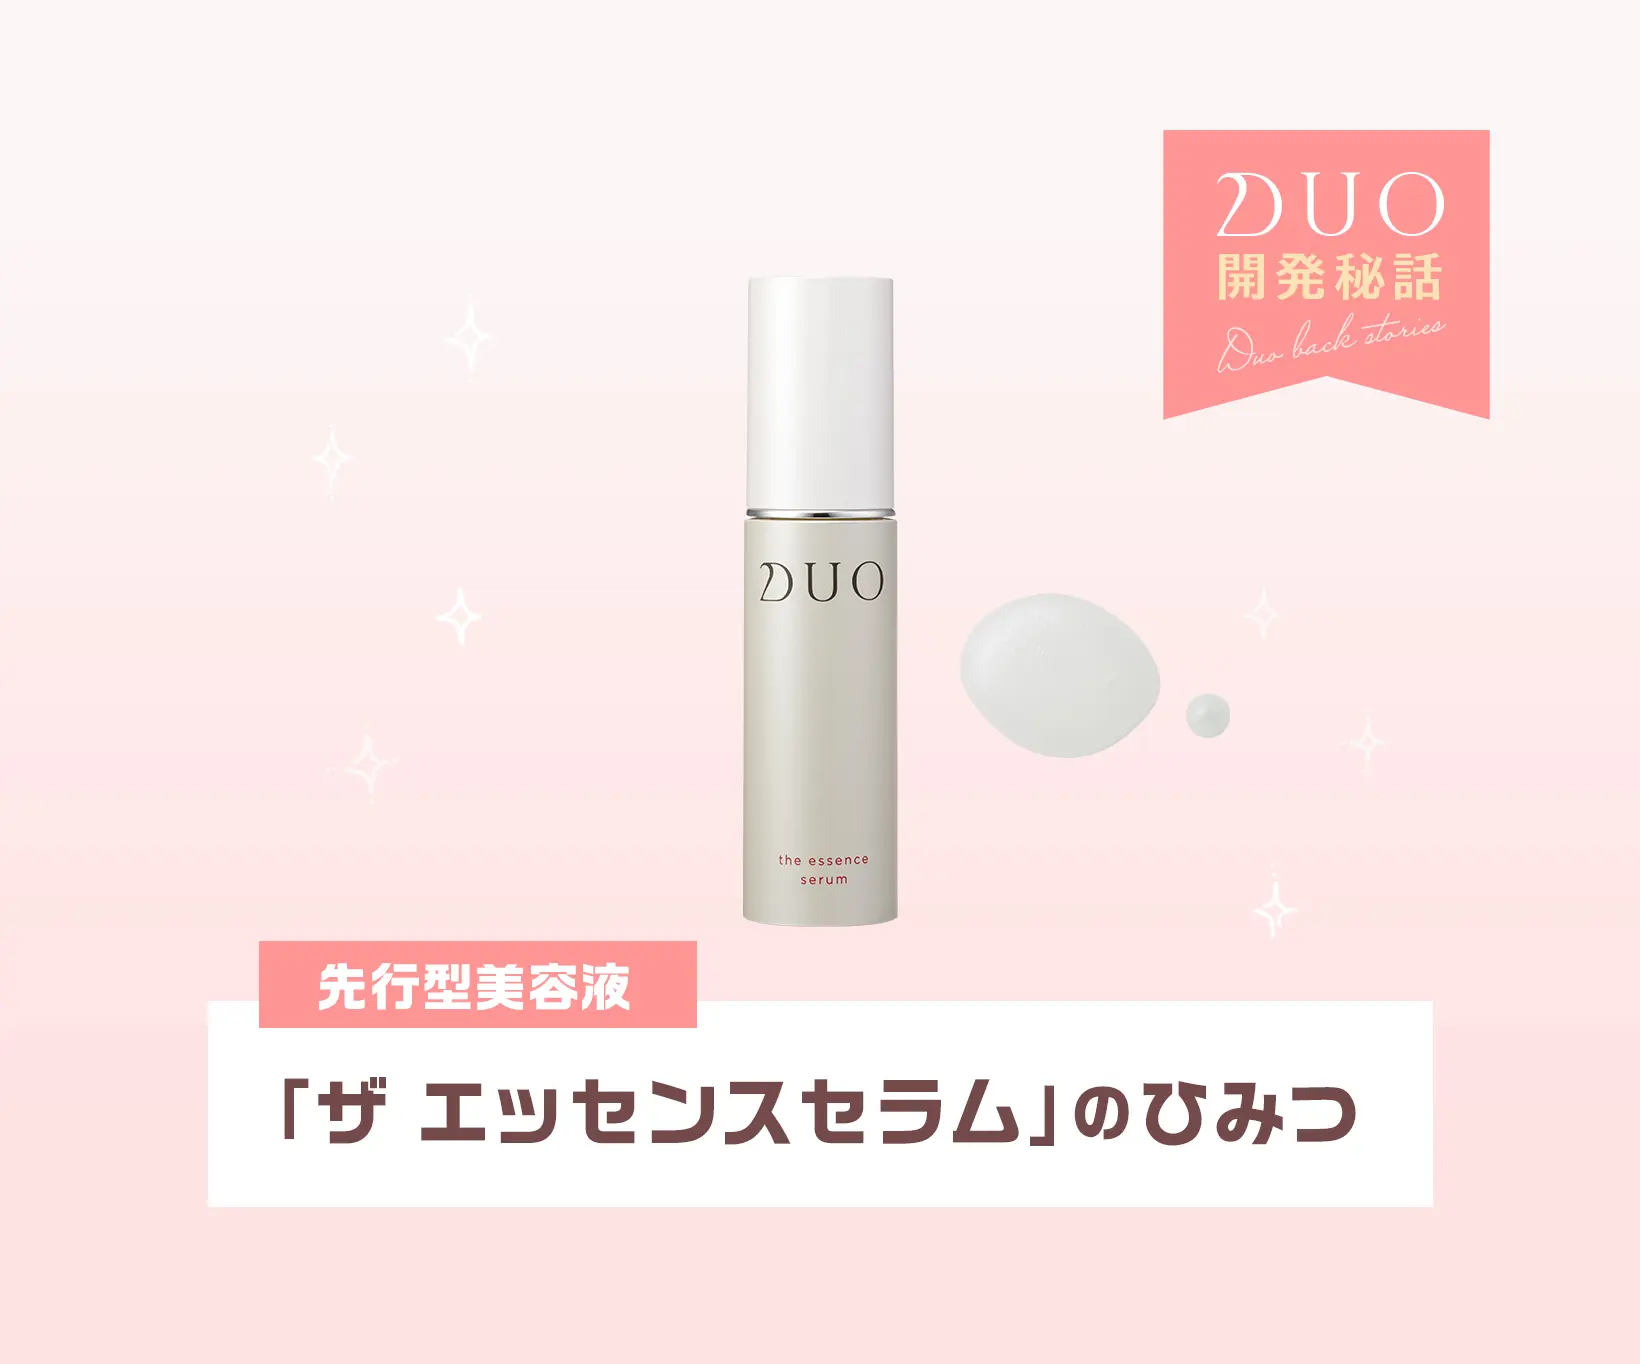 【新品・未使用】DUO ザ エッセンス セラムa 美容液 30mL